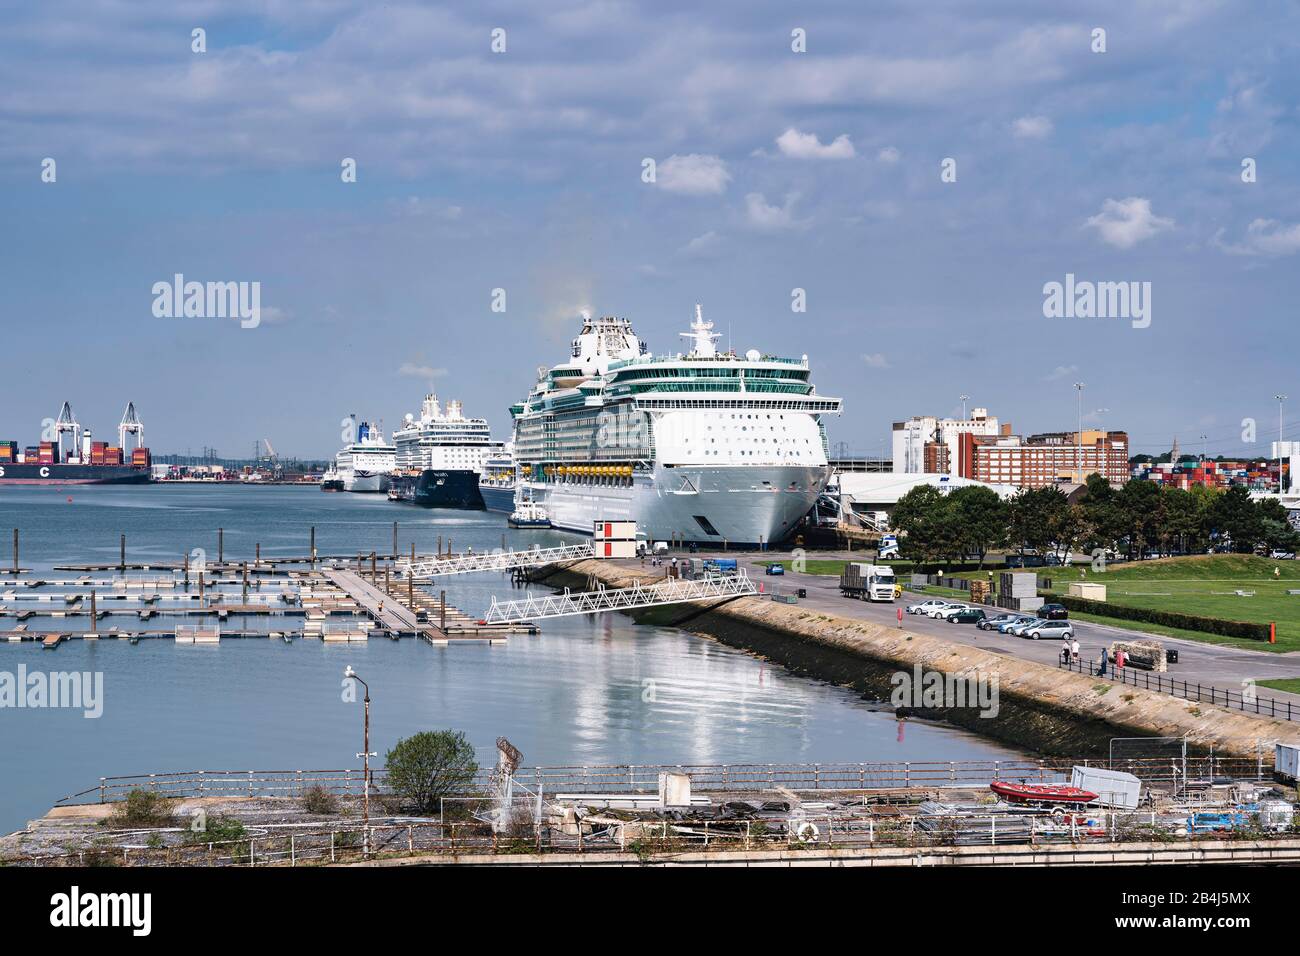 Ships, Harbor, Cruise, Southampton, United Kingdom, South Coast, England, Europe Stock Photo